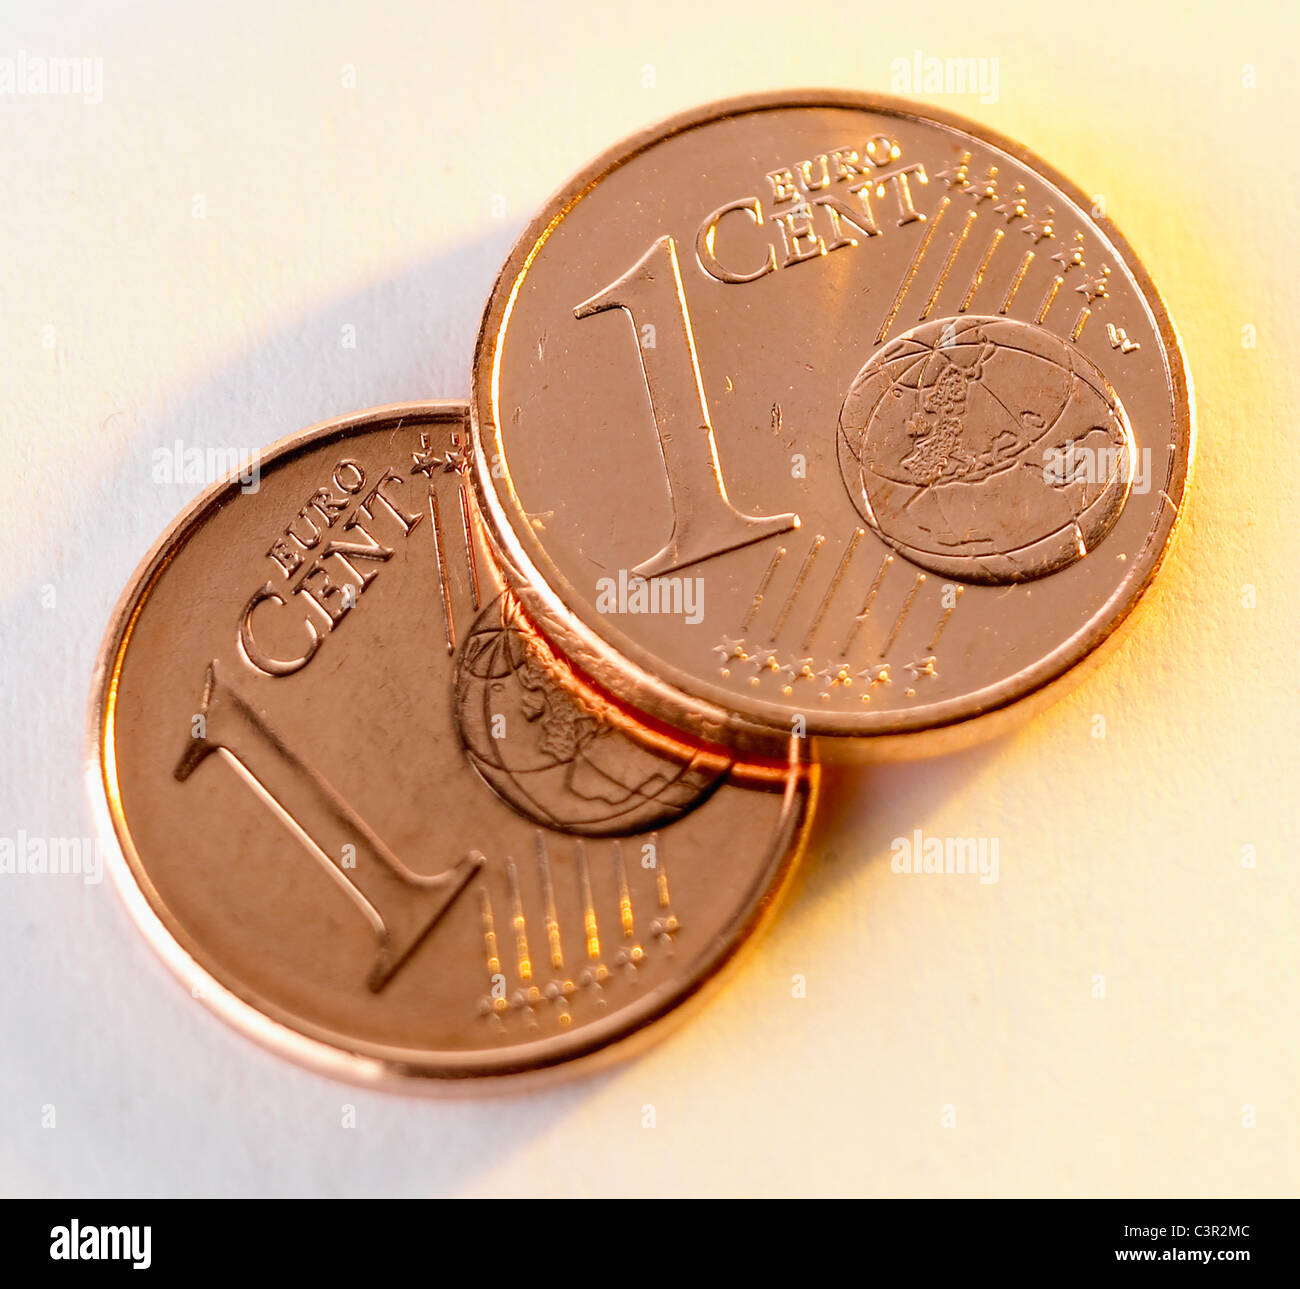 One euro coins on white background Stock Photo